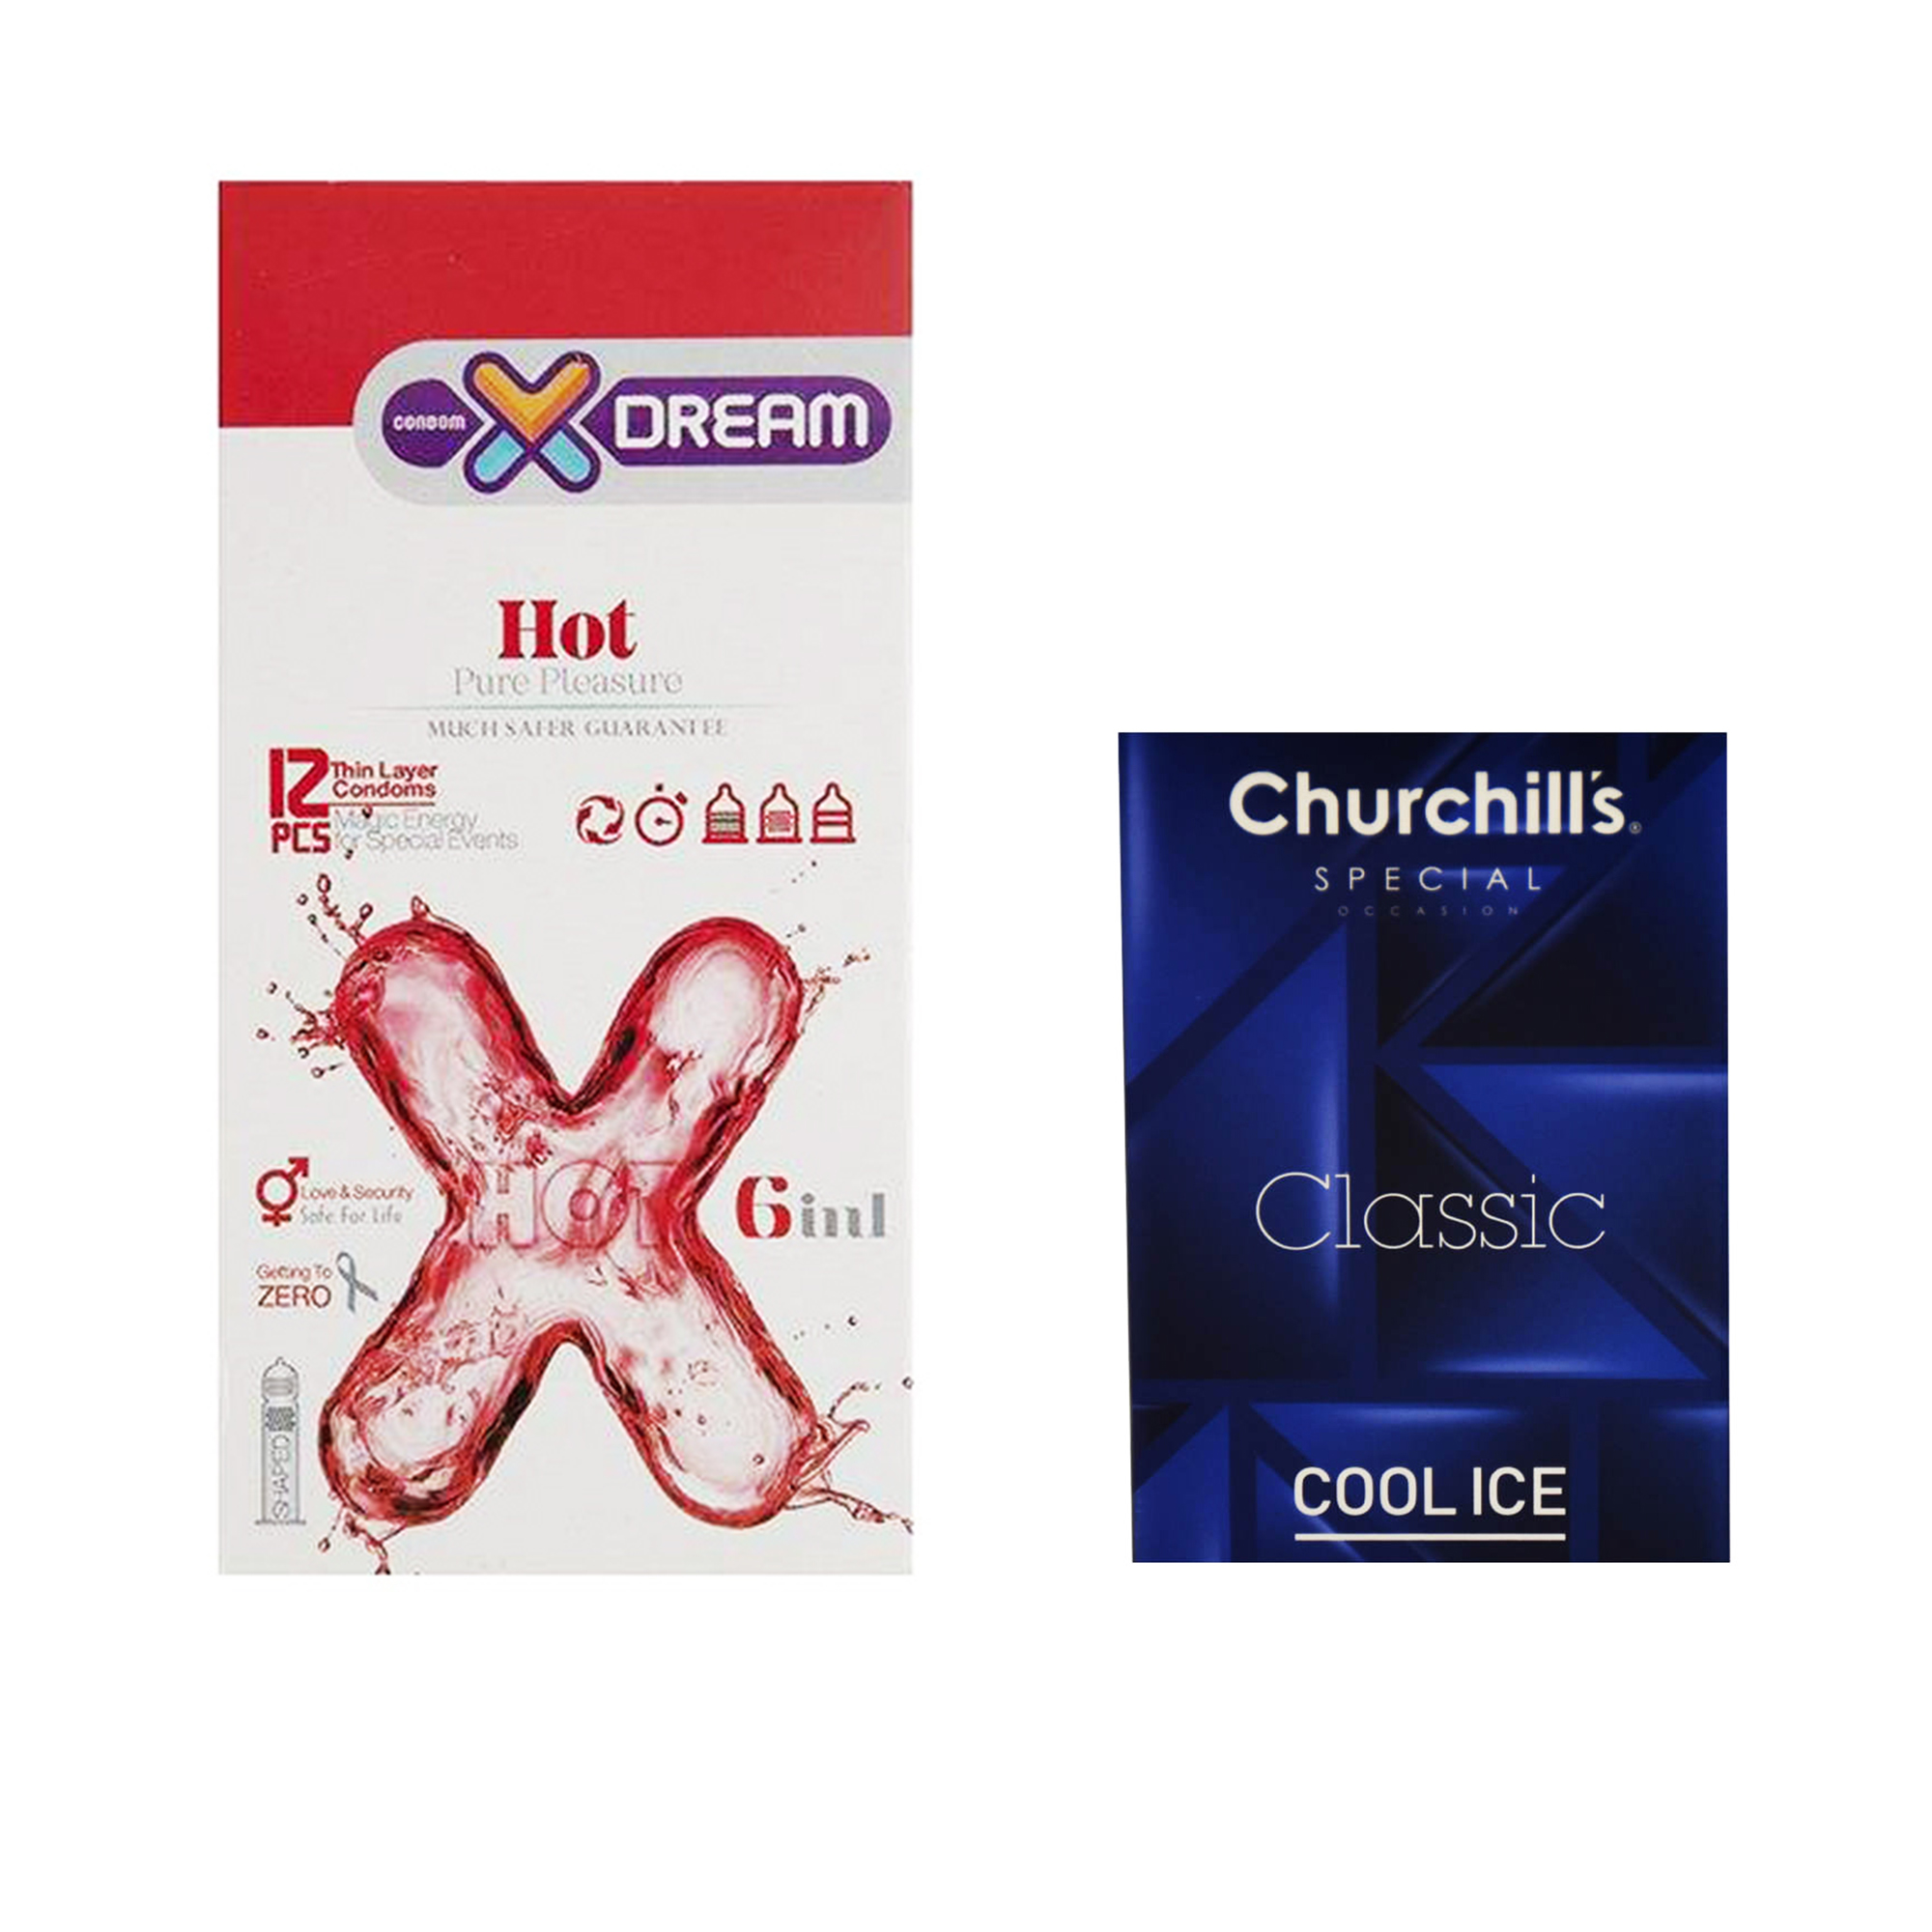 کاندوم ایکس دریم مدل Hot بسته 12 عددی به همراه کاندوم چرچیلز مدل Cool Ice بسته 3 عددی